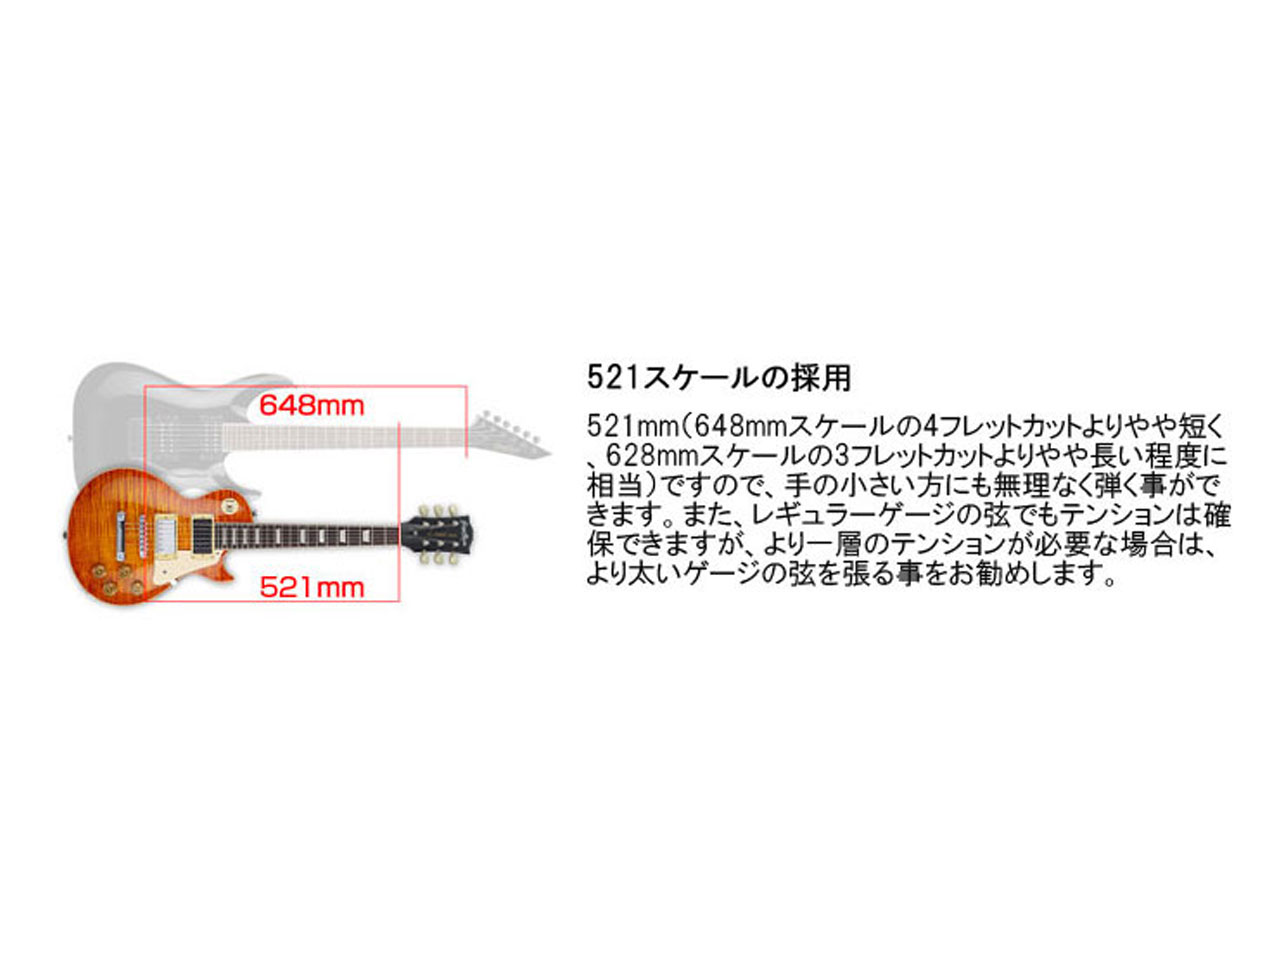 【受注生産】GrassRoots(グラスルーツ) G-LPC-MINI / Black | ミニギター